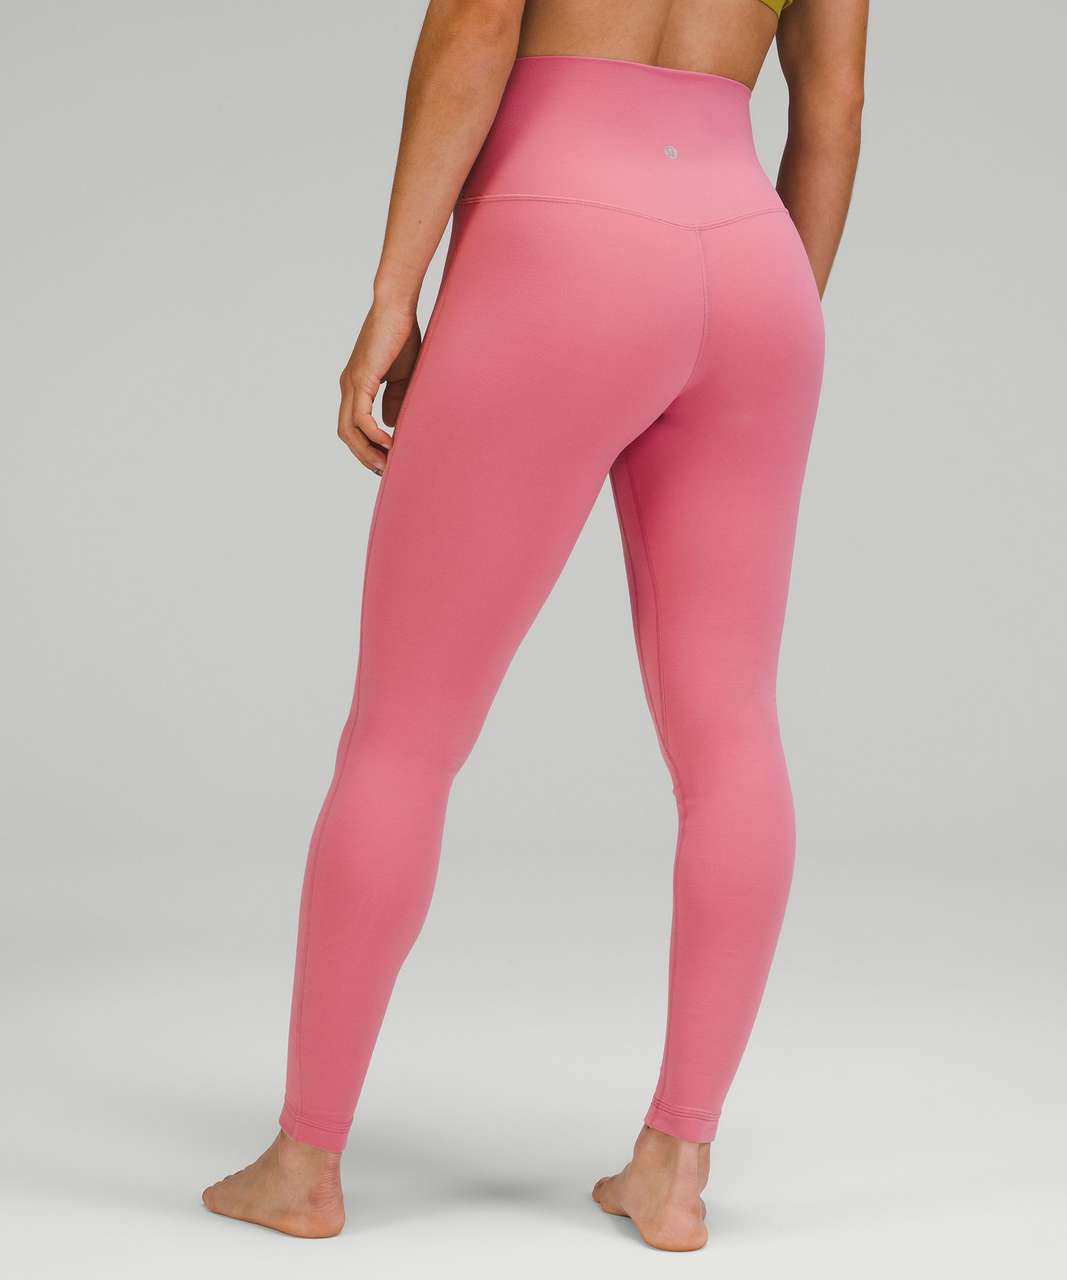 Align high rise pink lululemon leggings